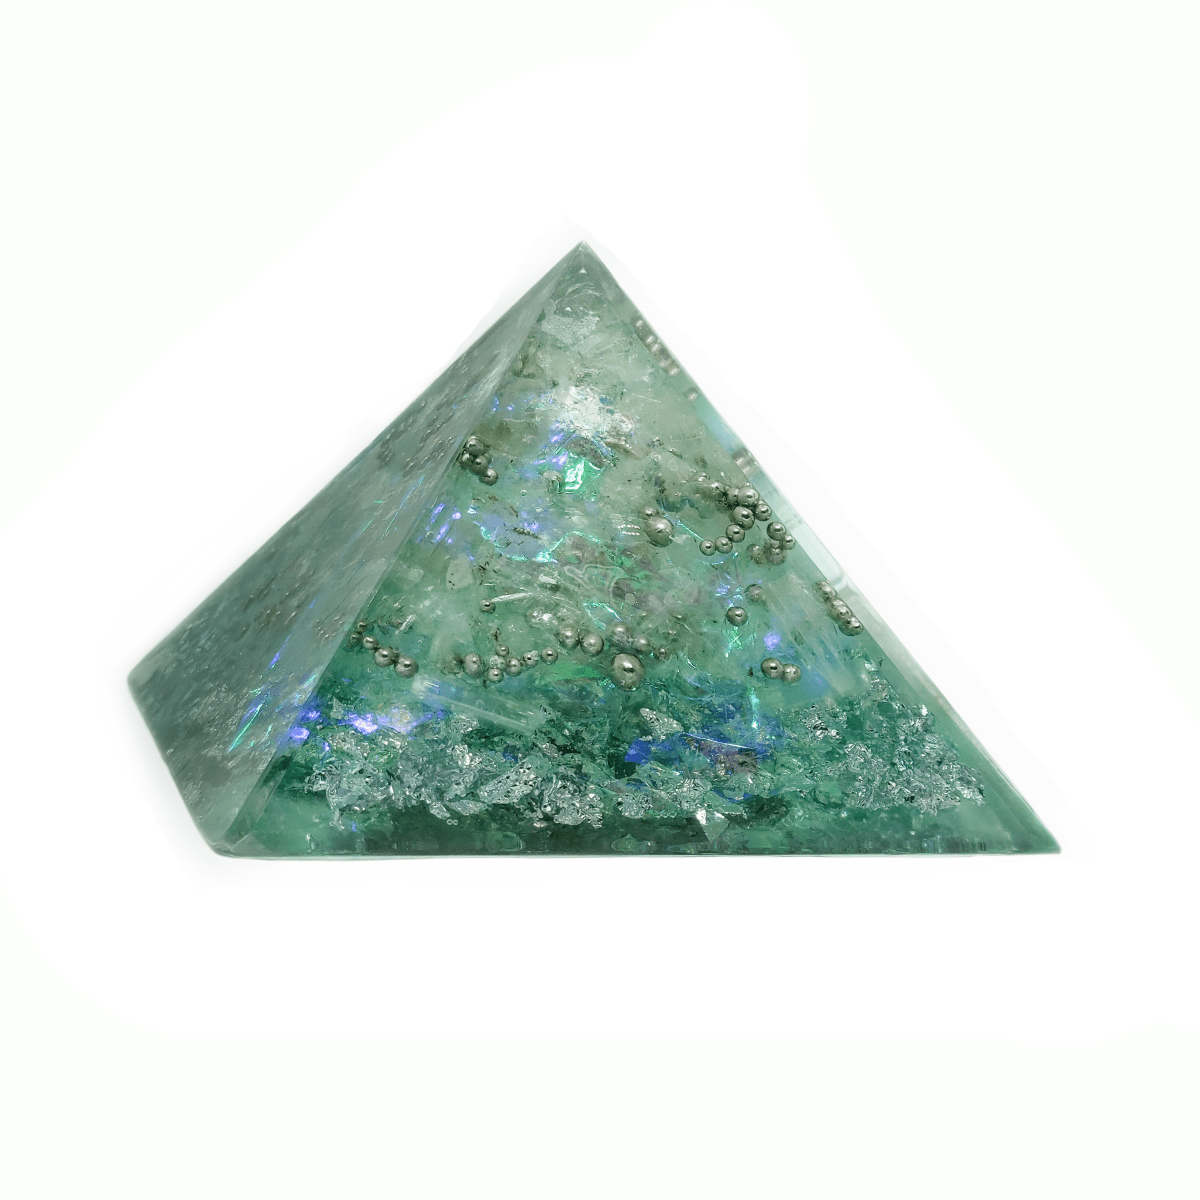 Polarlicht Pyramide mit Selenit & weiteren Edelsteinen als Orgonit auf weißem Hintergrund.